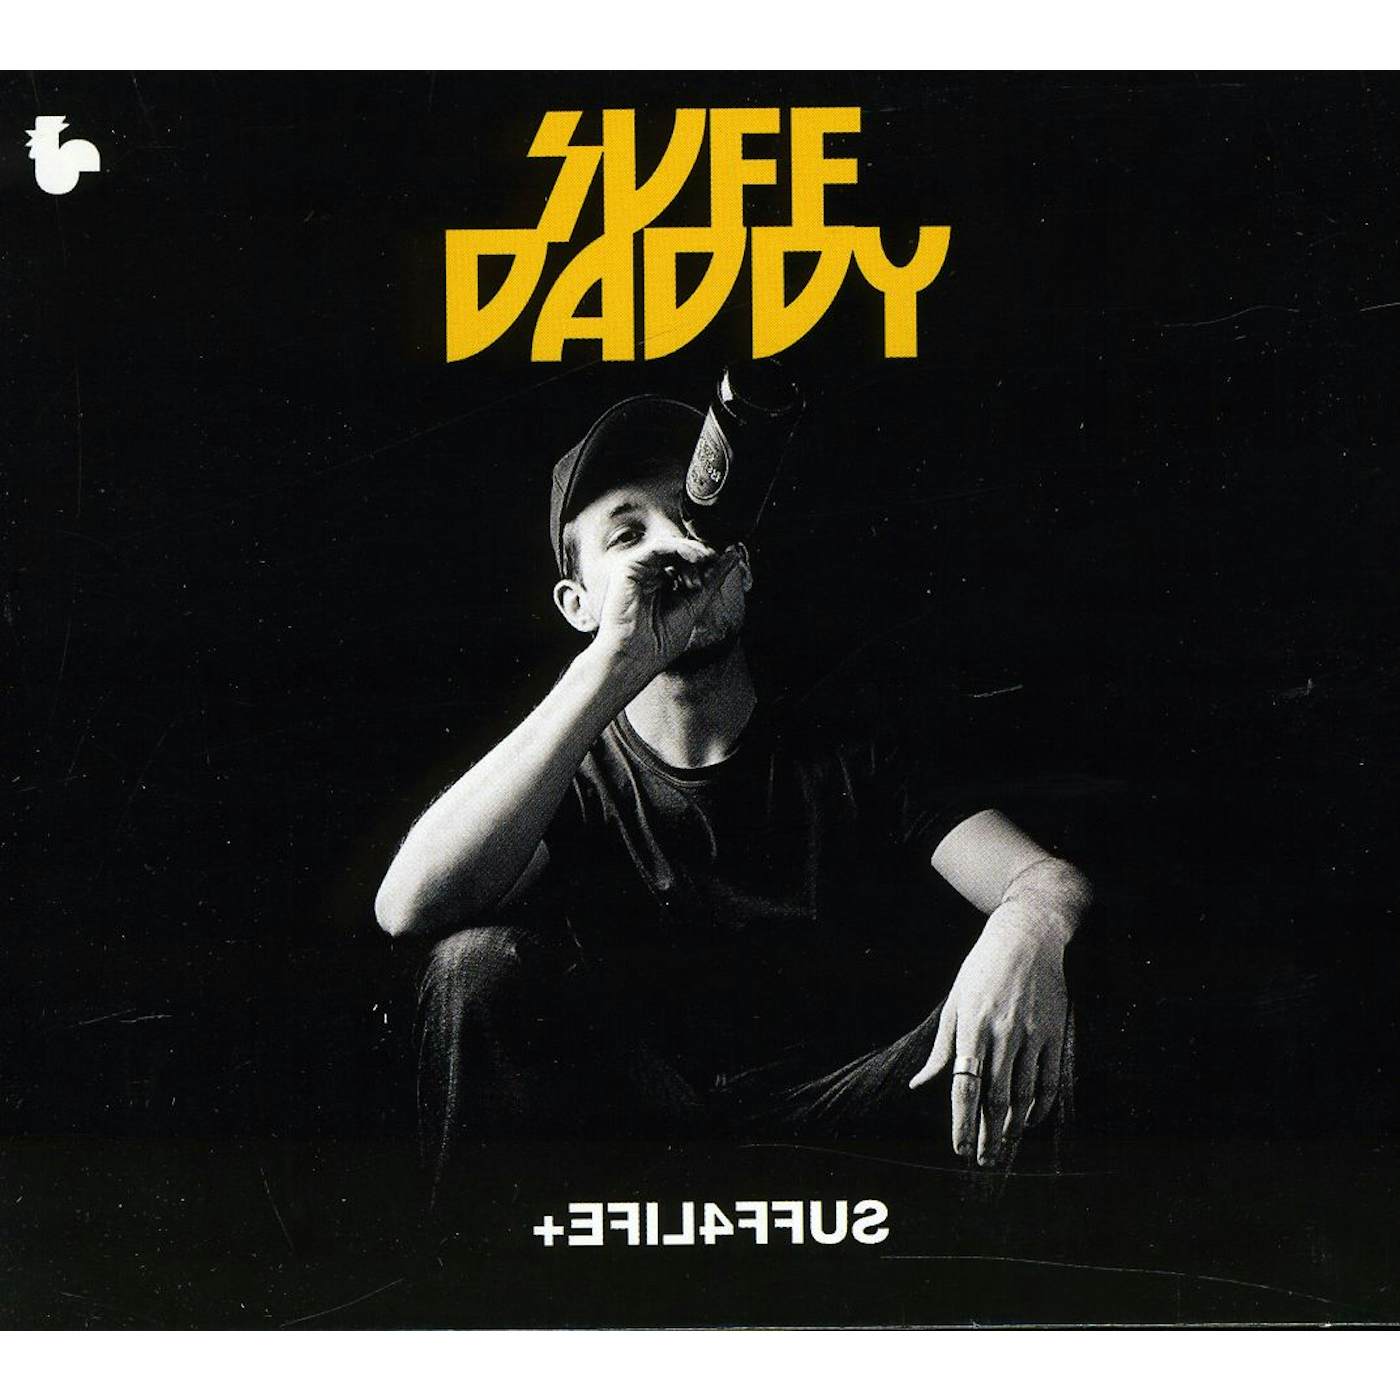 Suff Daddy EFIL4FFUS CD